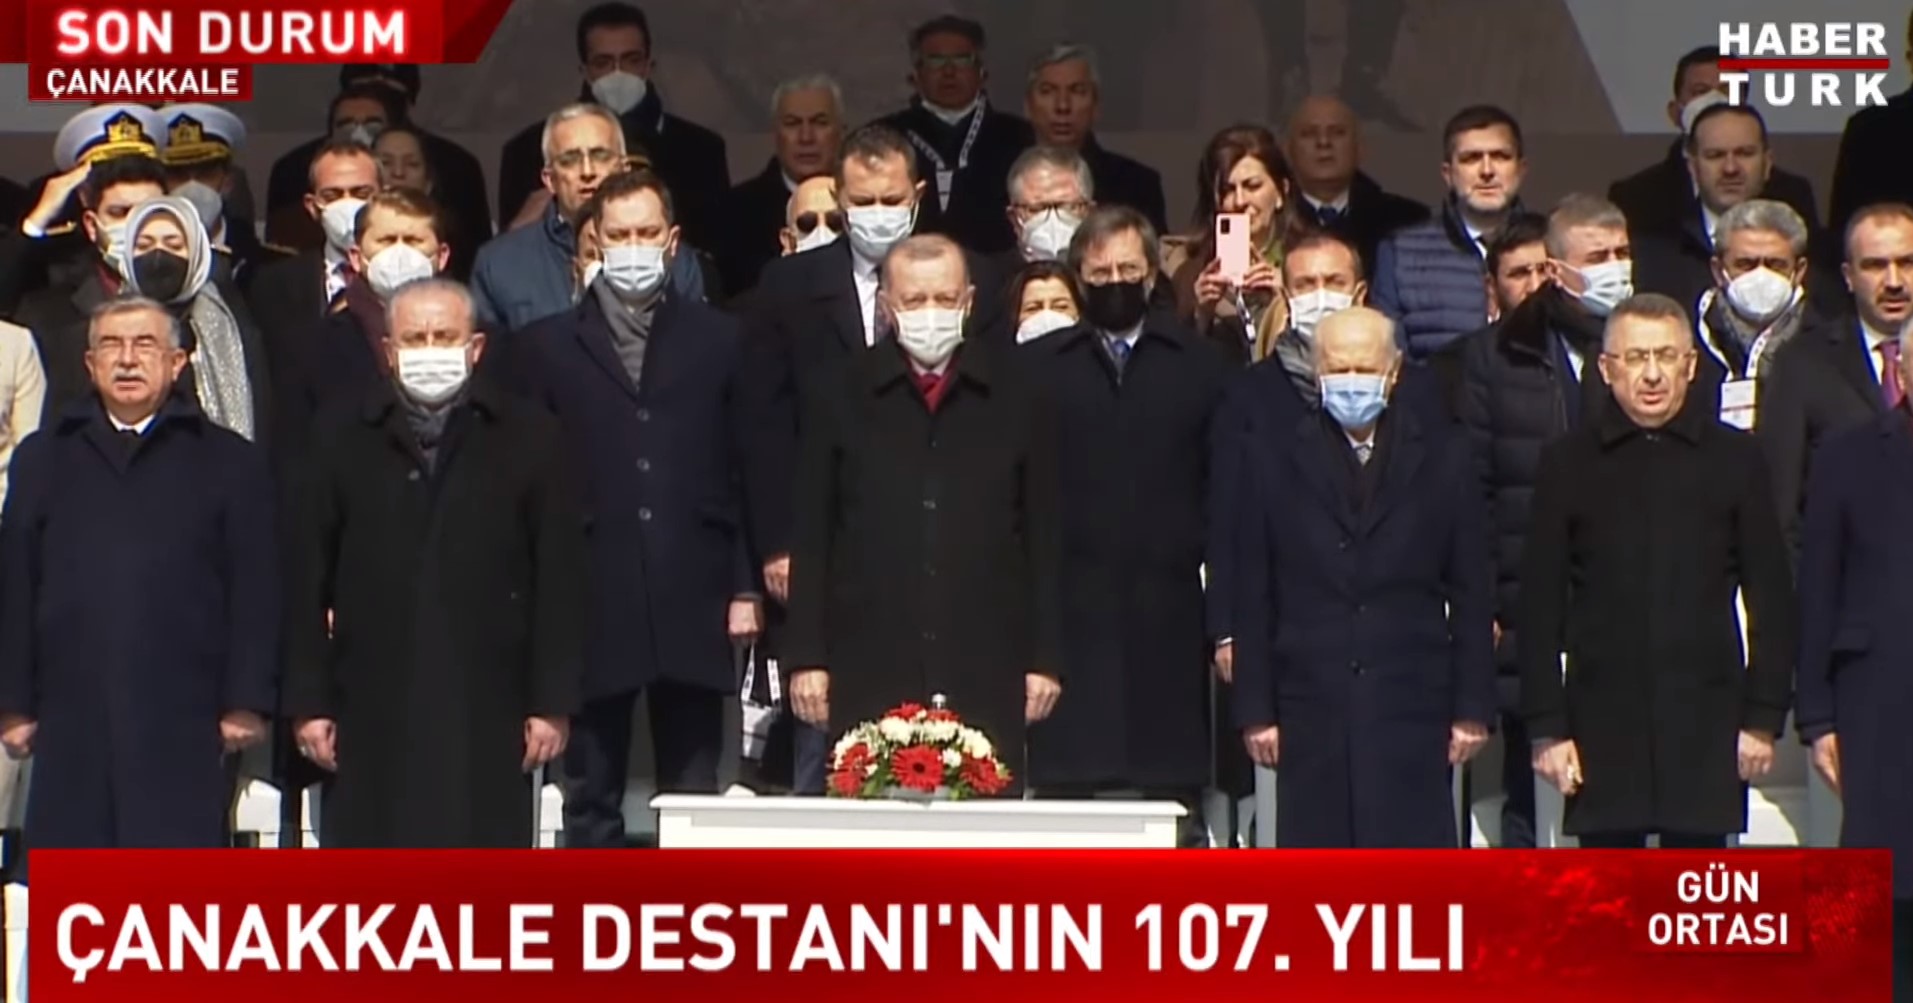 Tarihi değiştiren büyük zafer 107 yaşında! 18 Mart Çanakkale şehitleri anıldı: Cumhurbaşkanı Erdoğan törende konuştu: Çanakkale Savaşları kahramanlık destanıdır